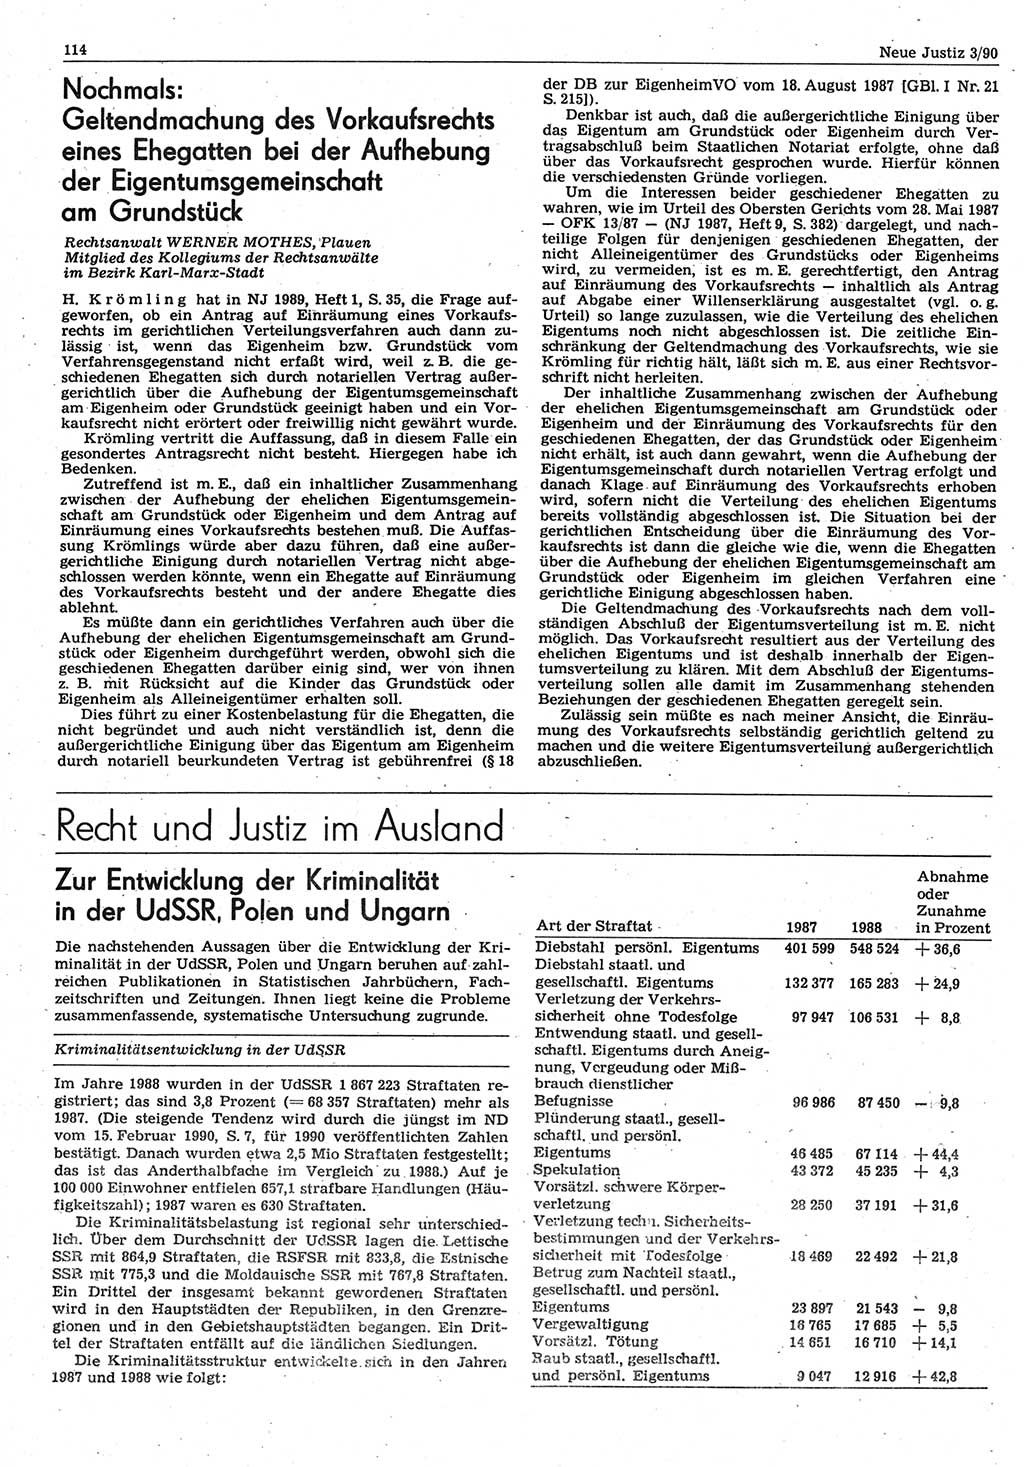 Neue Justiz (NJ), Zeitschrift für Rechtsetzung und Rechtsanwendung [Deutsche Demokratische Republik (DDR)], 44. Jahrgang 1990, Seite 114 (NJ DDR 1990, S. 114)